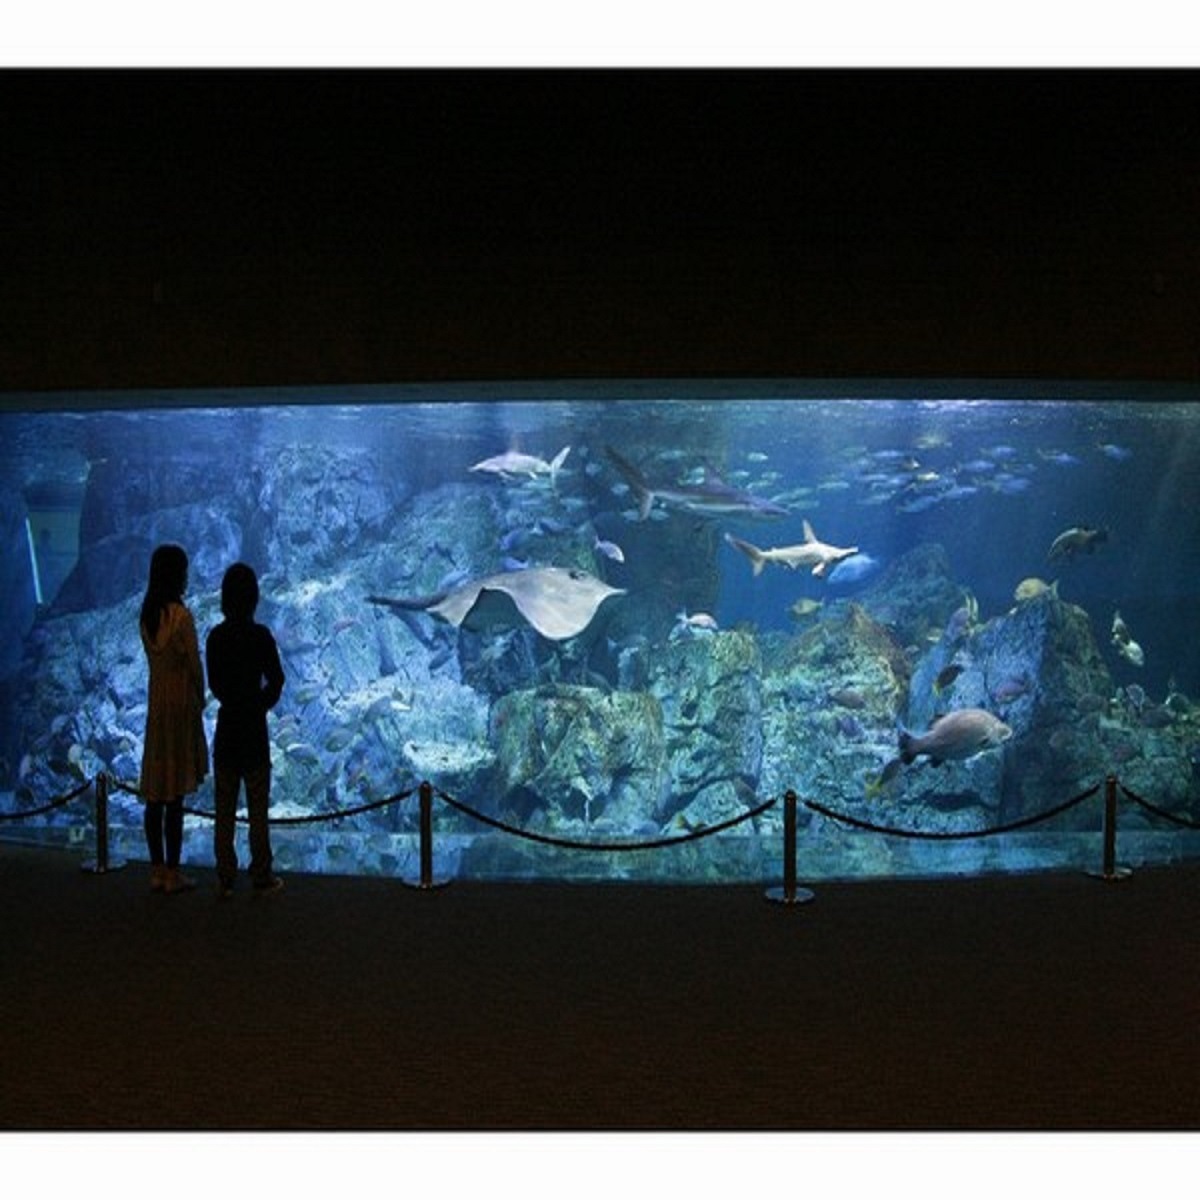 ■アクティビティ：うみたまご「大回遊水槽」は約90種類、1500尾の魚たちが泳いでいます